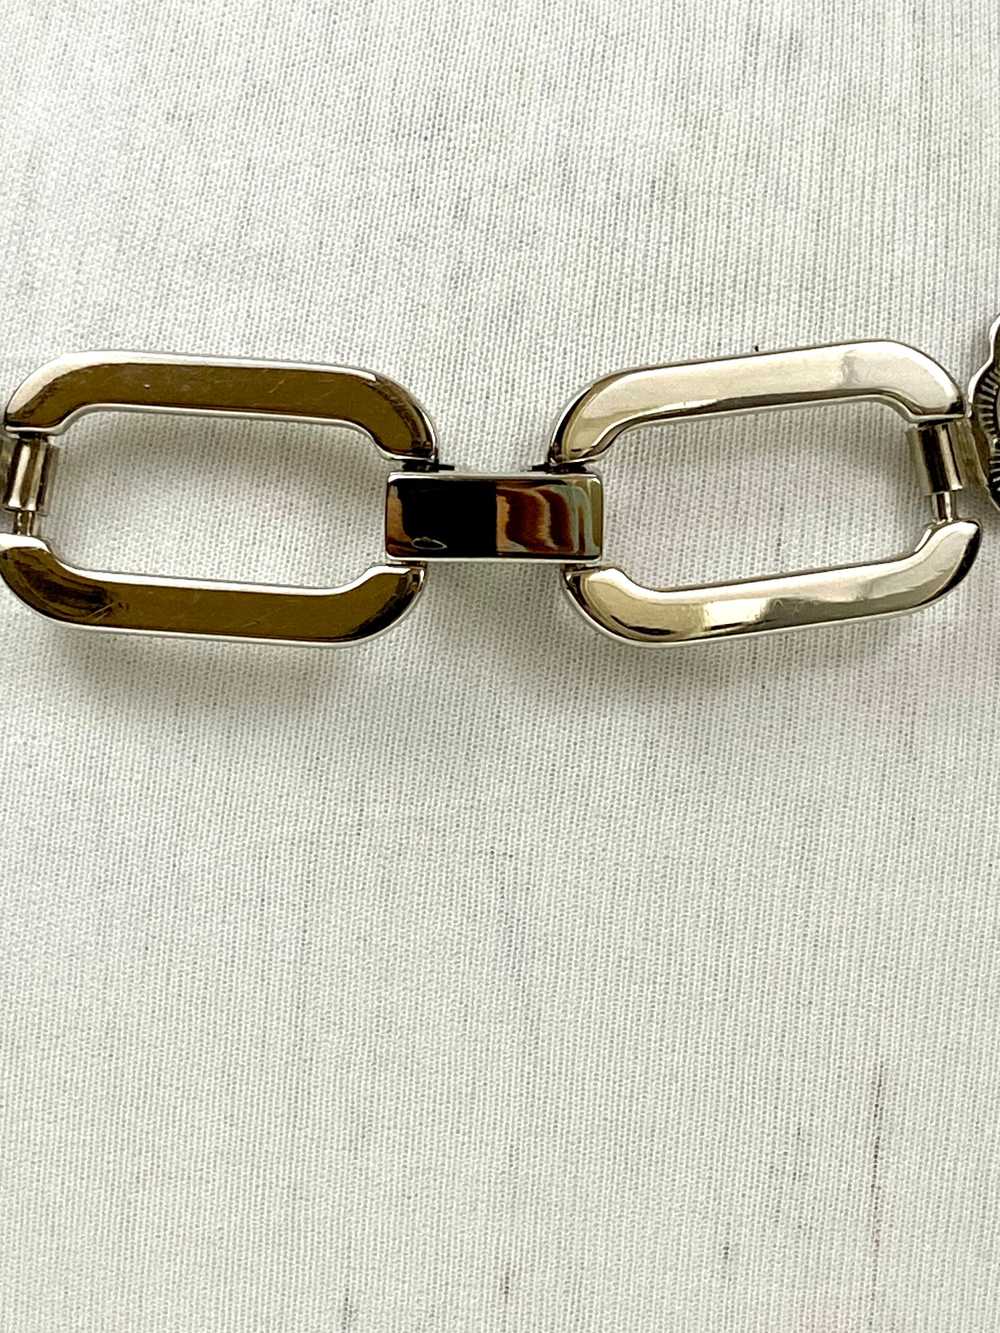 Waist chain belt - image 4